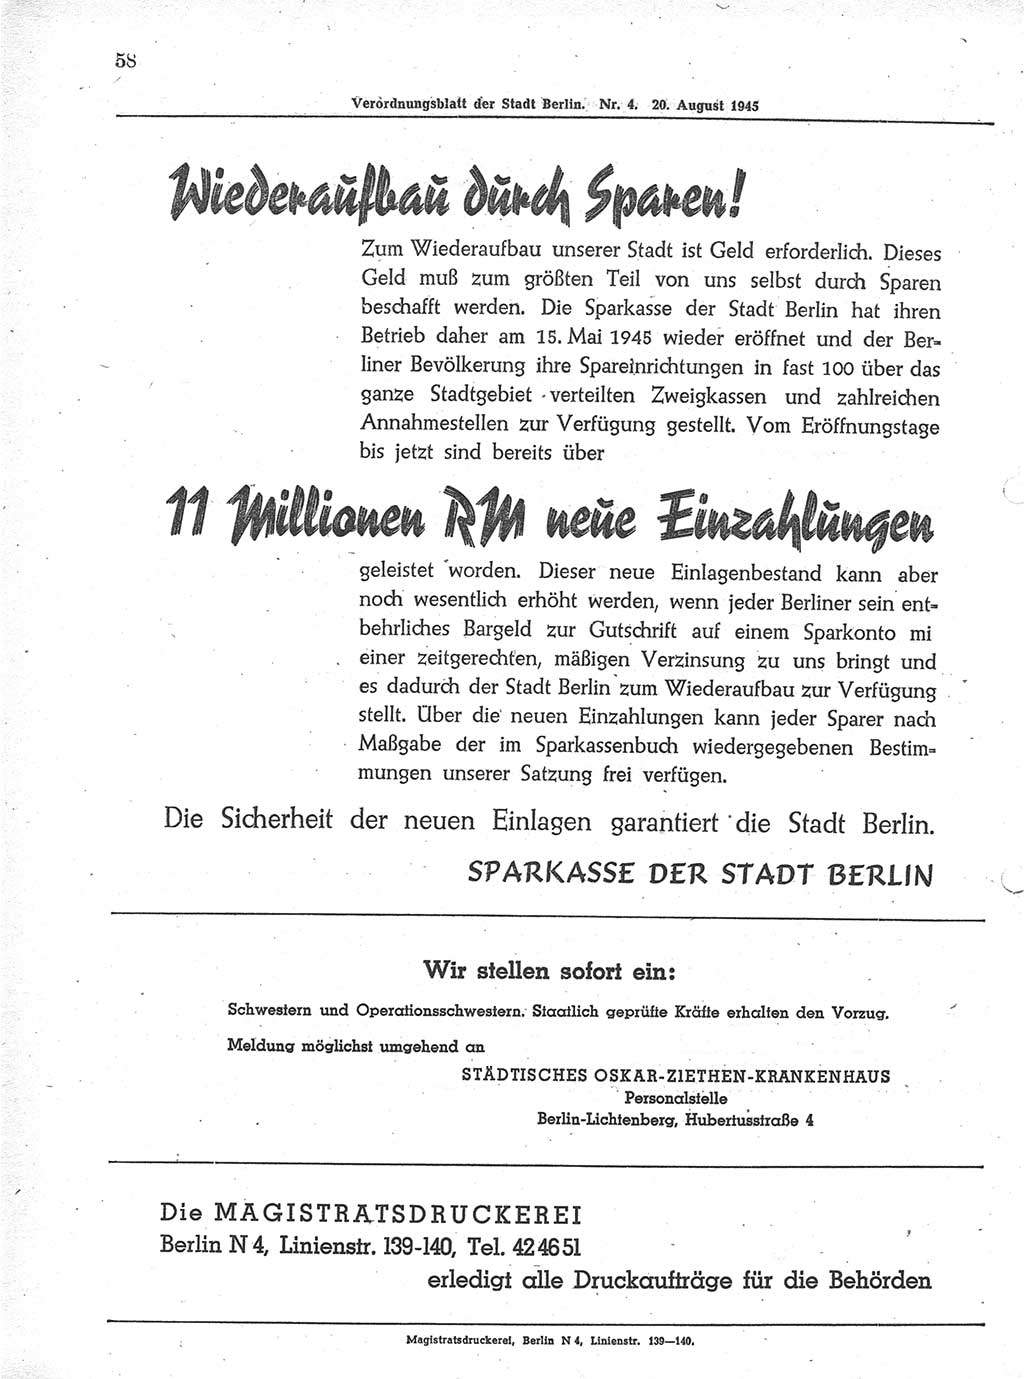 Verordnungsblatt (VOBl.) der Stadt Berlin 1945, Seite 58 (VOBl. Bln. 1945, S. 58)